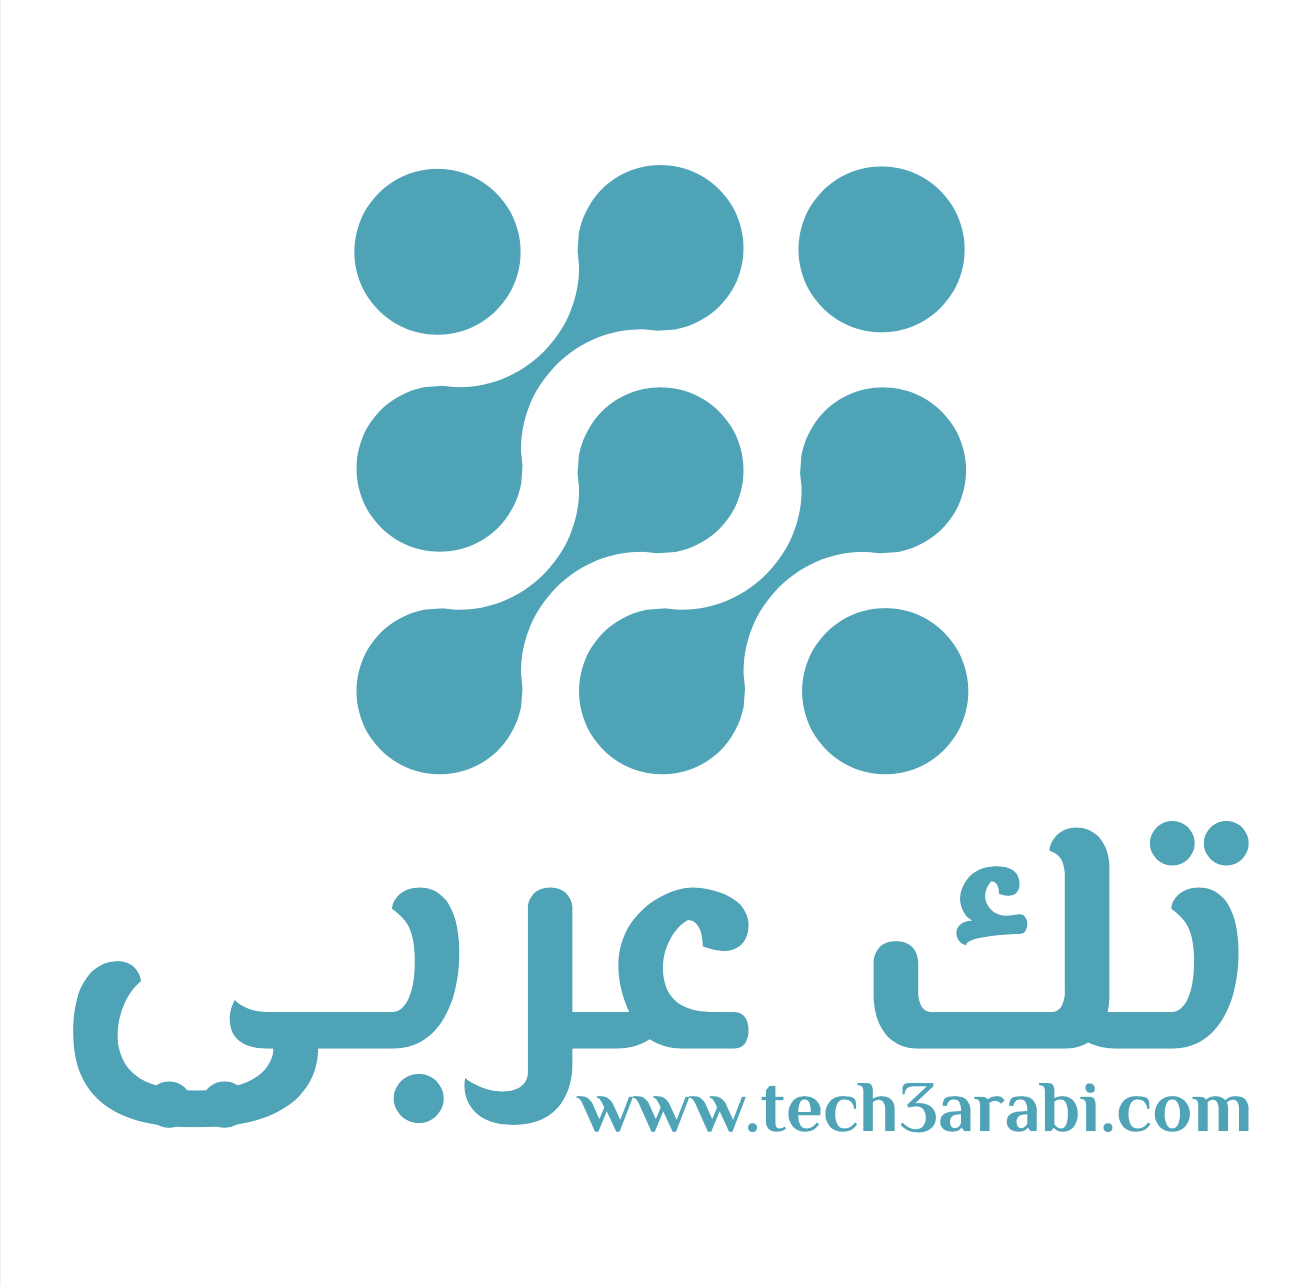 Tech3arabi